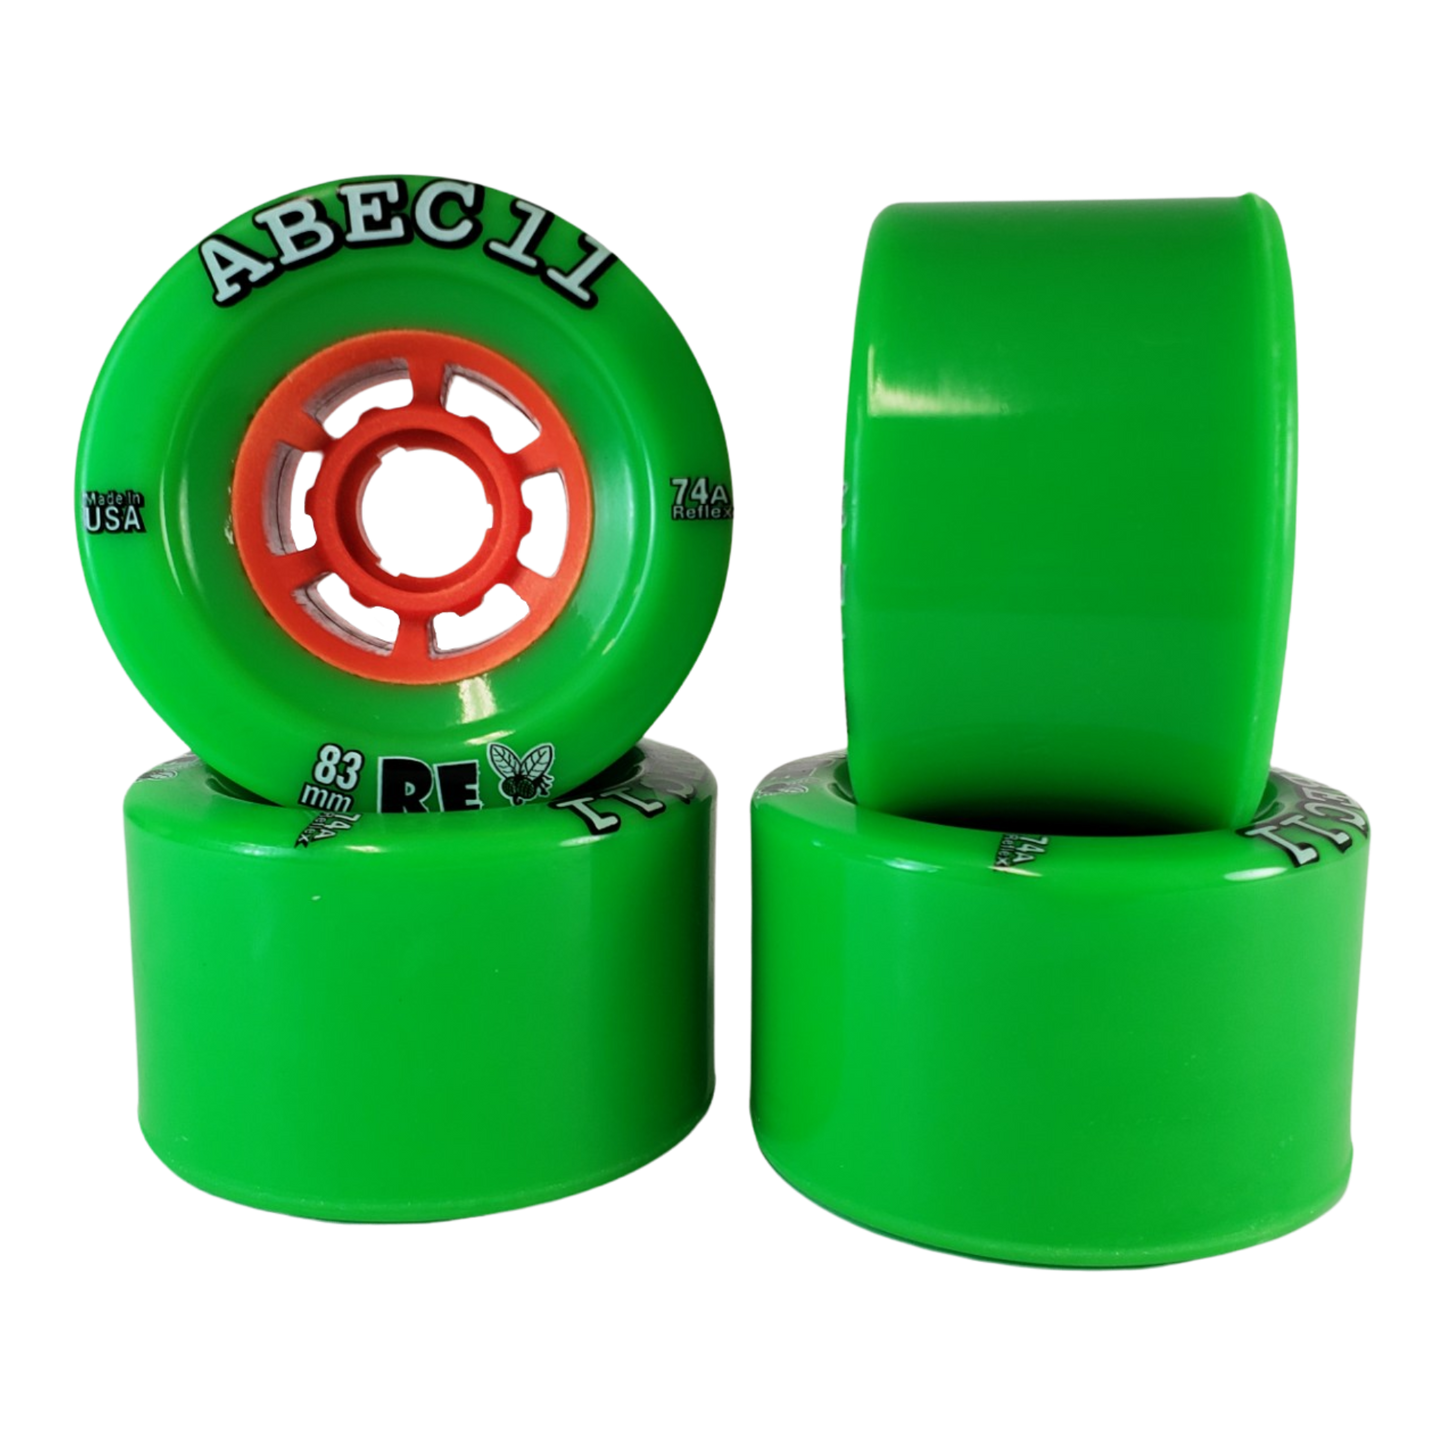 ABEC11: 83mm ReFly Longboard Skateboard Wheel